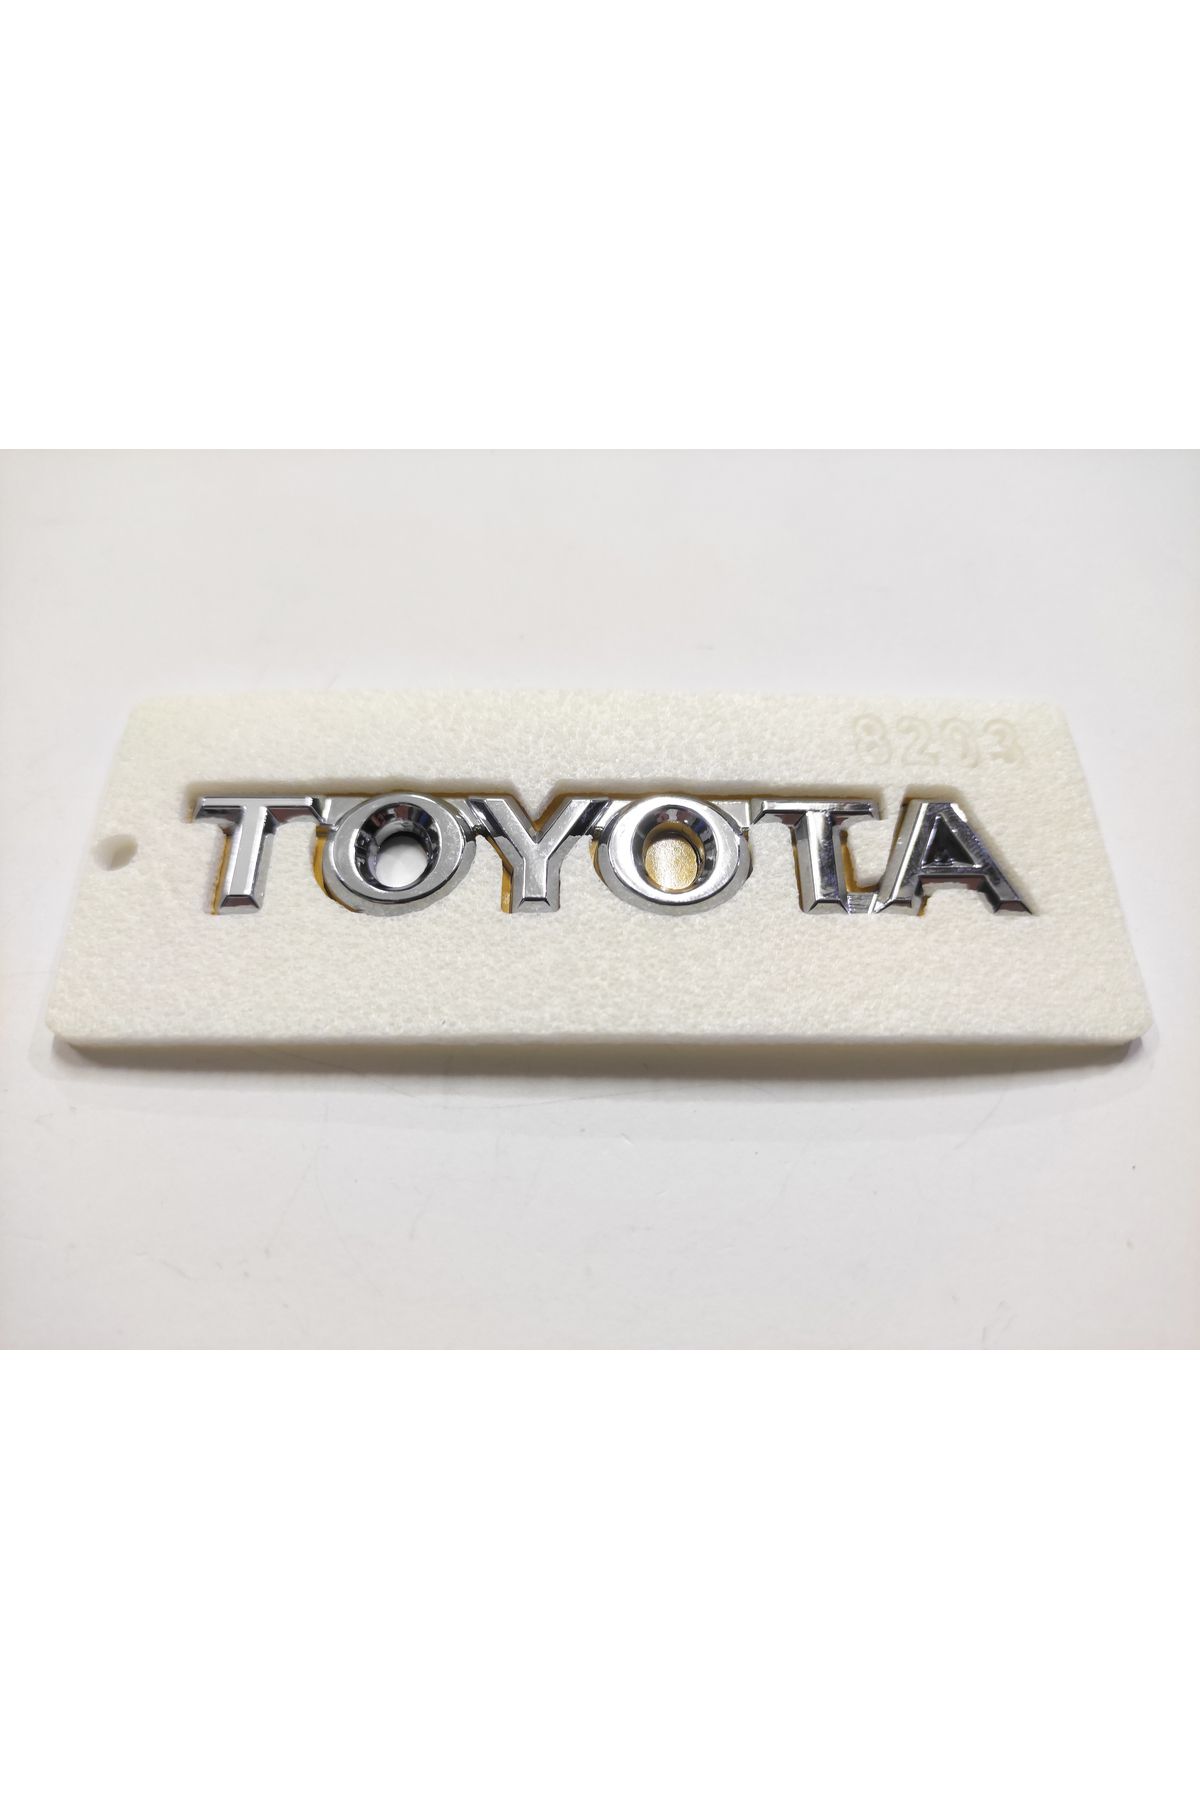 REPLAX Toyota Arma Bagaj Yazısı (E.M.) Yapıştırma 10cmx1.8cm 8203